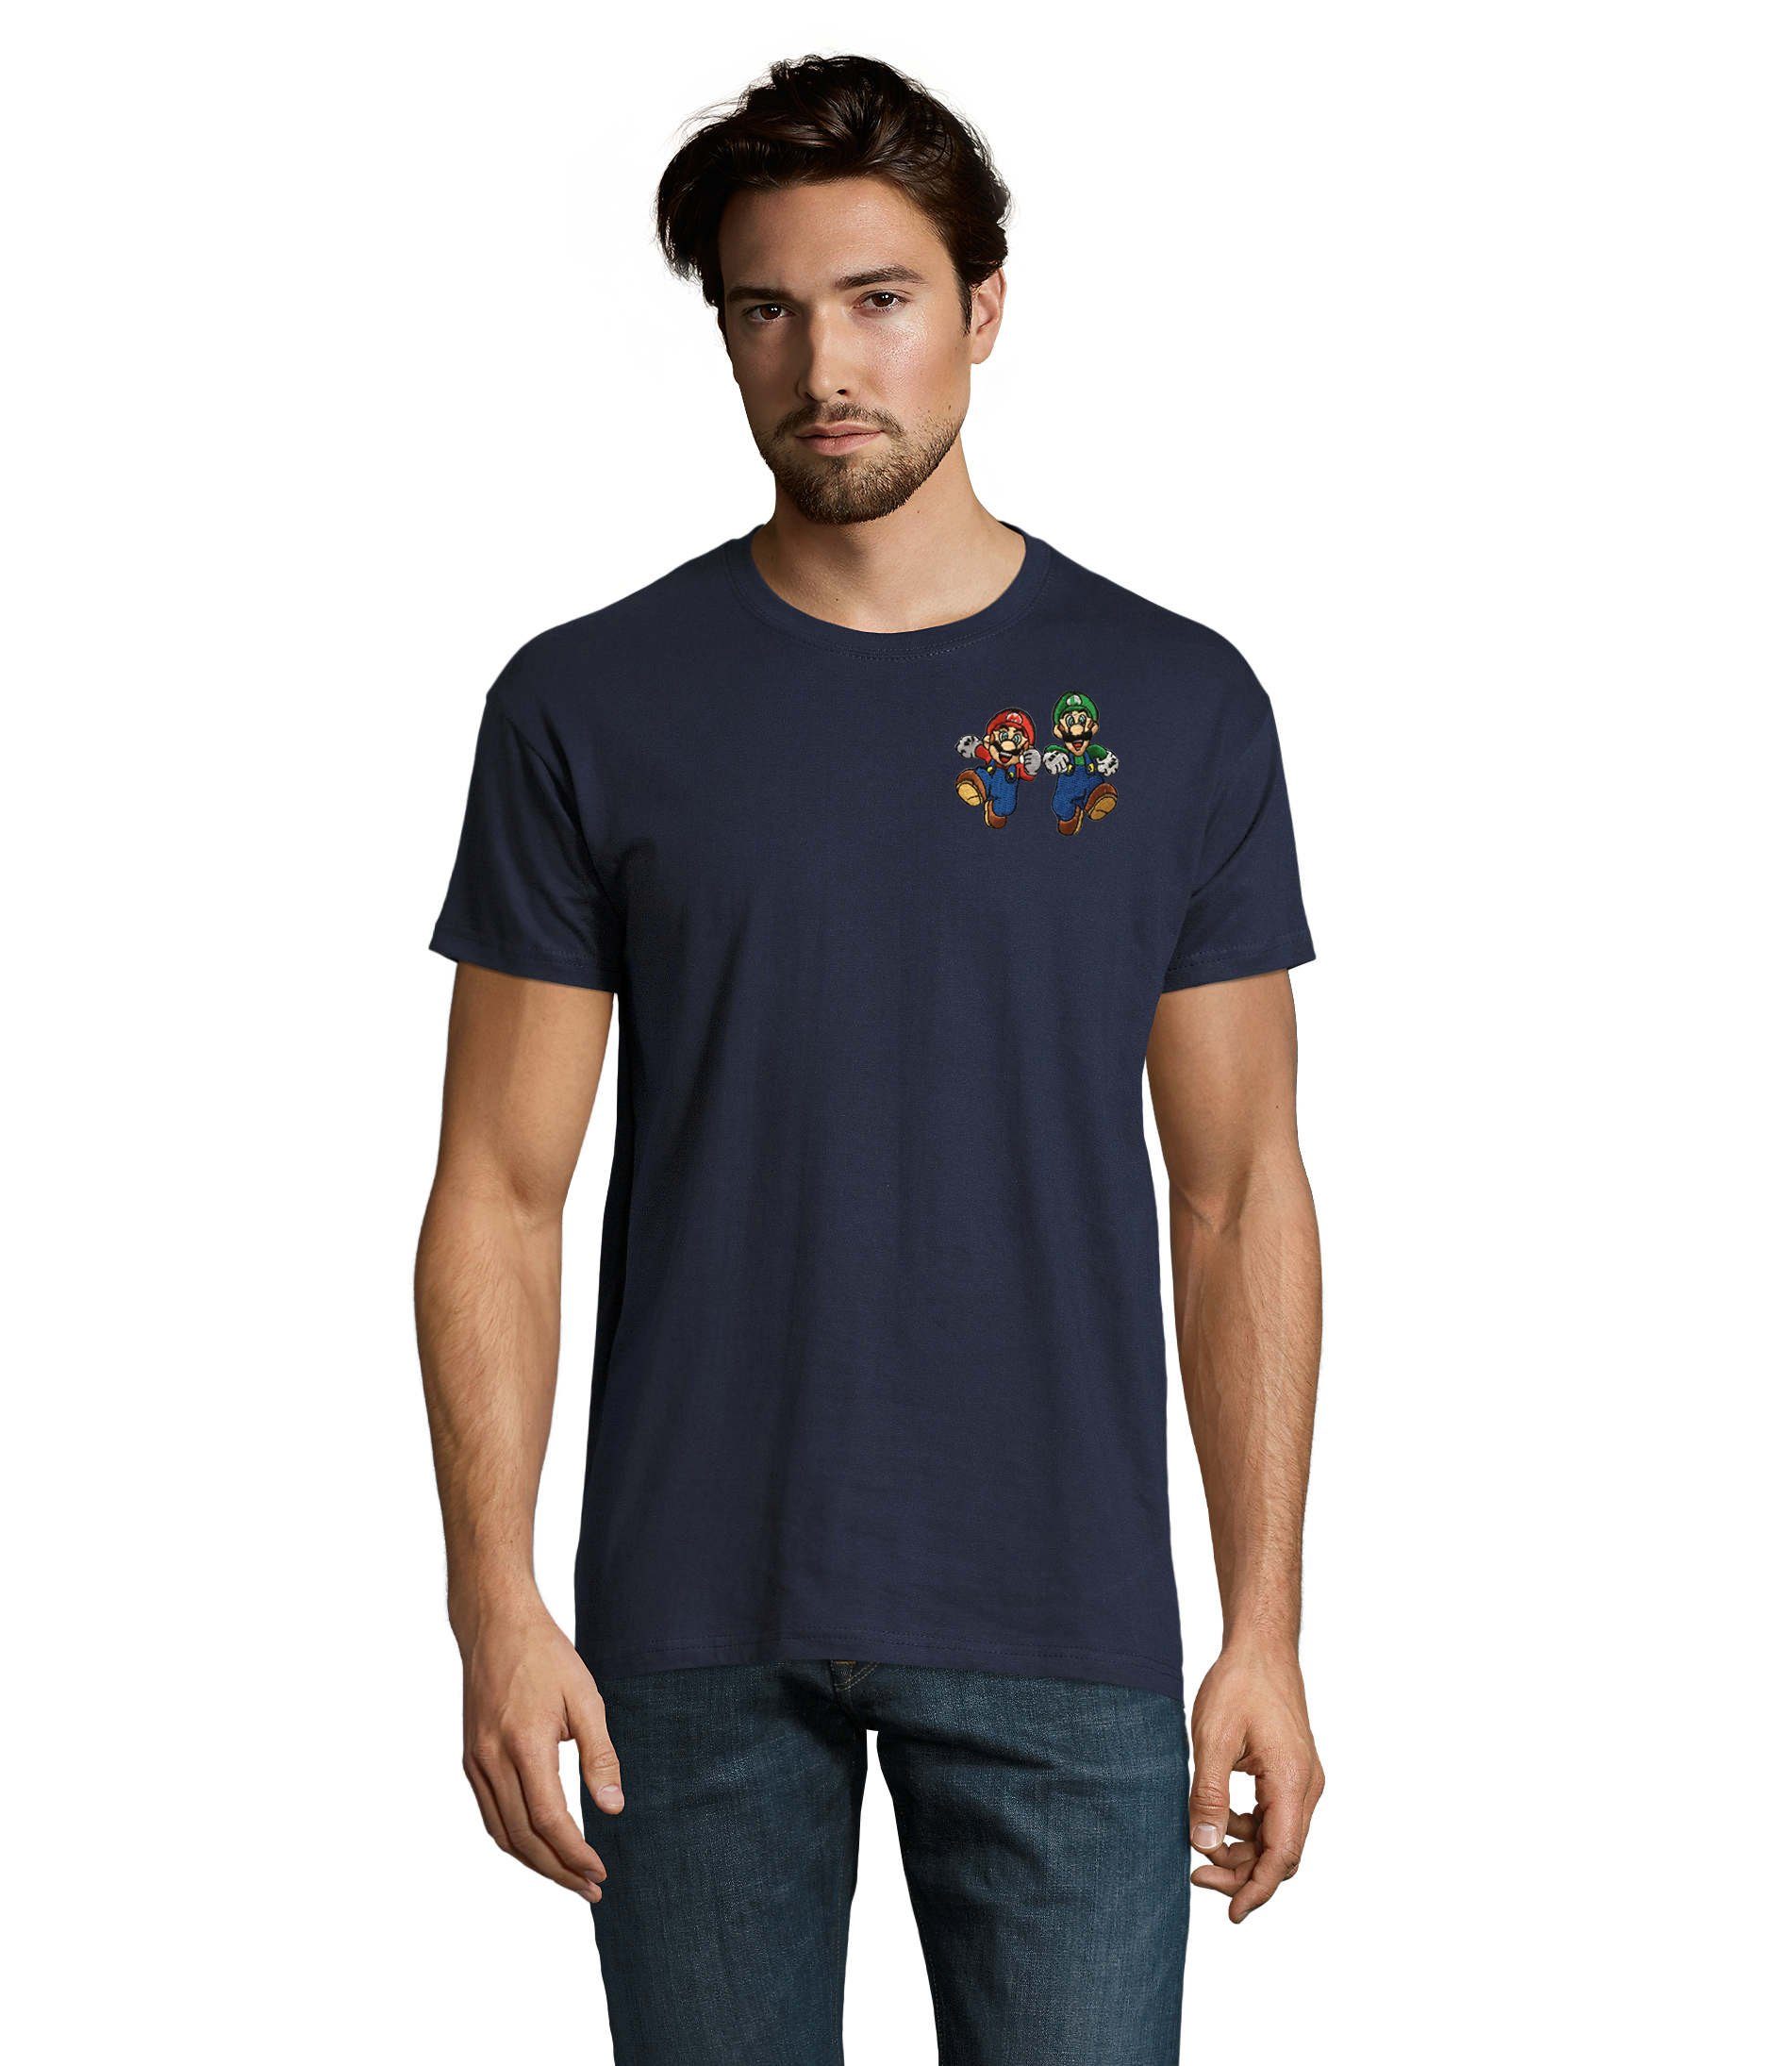 Blondie & Brownie T-Shirt Herren Mario & Luigi Brust Stick Peach Konsole Nintendo Gaming bestickt Navyblau